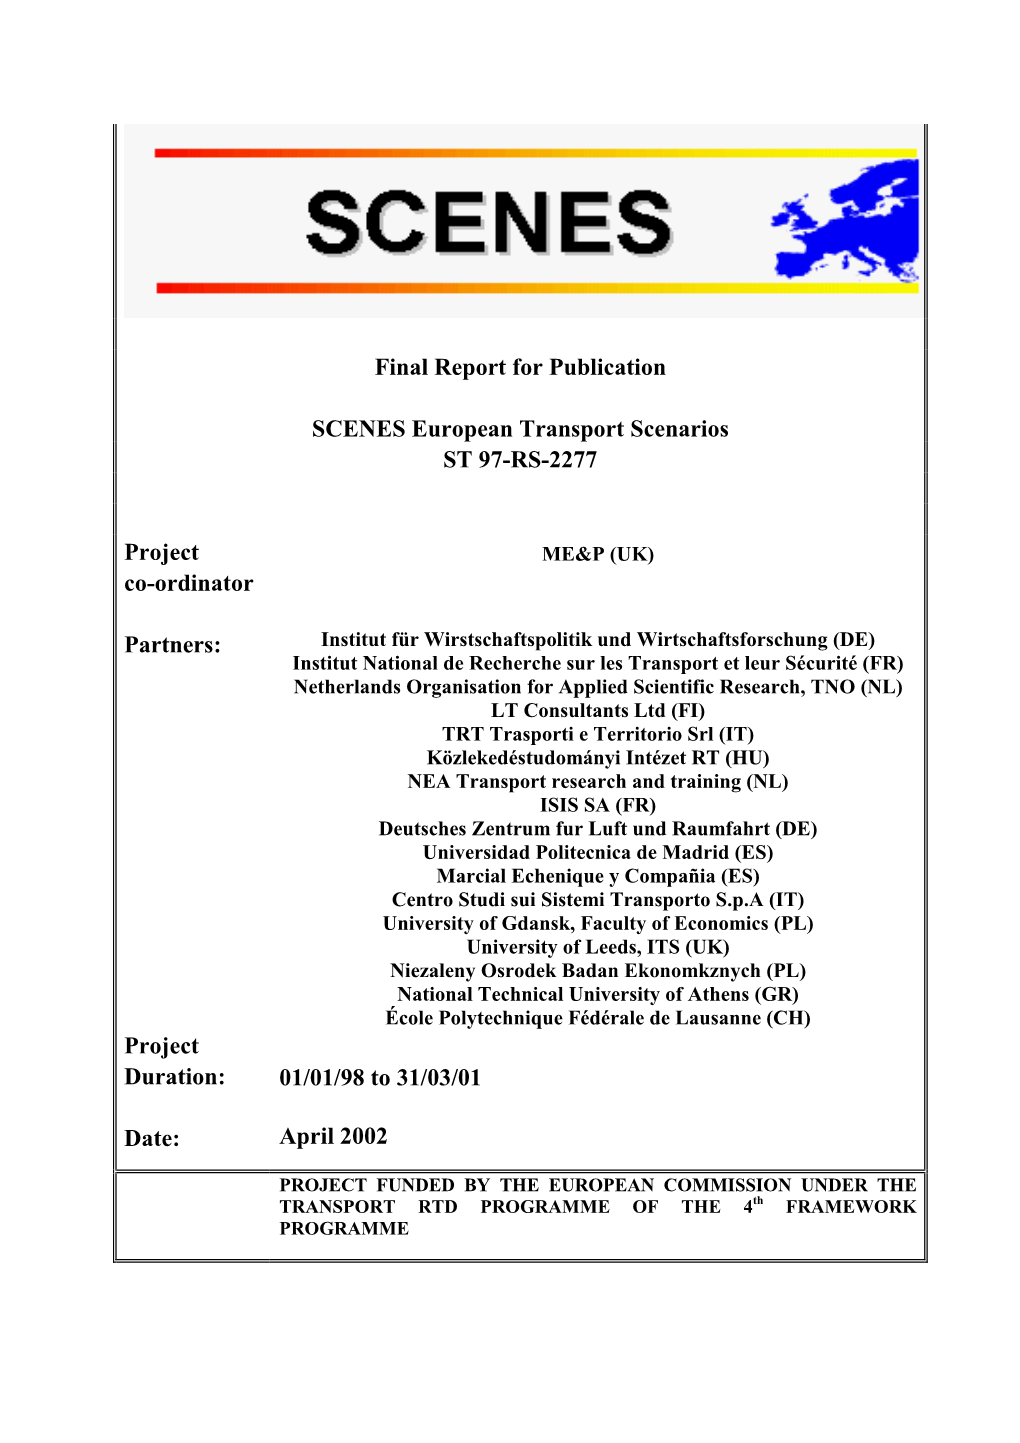 SCENES European Transport Scenarios ST 97-RS-2277